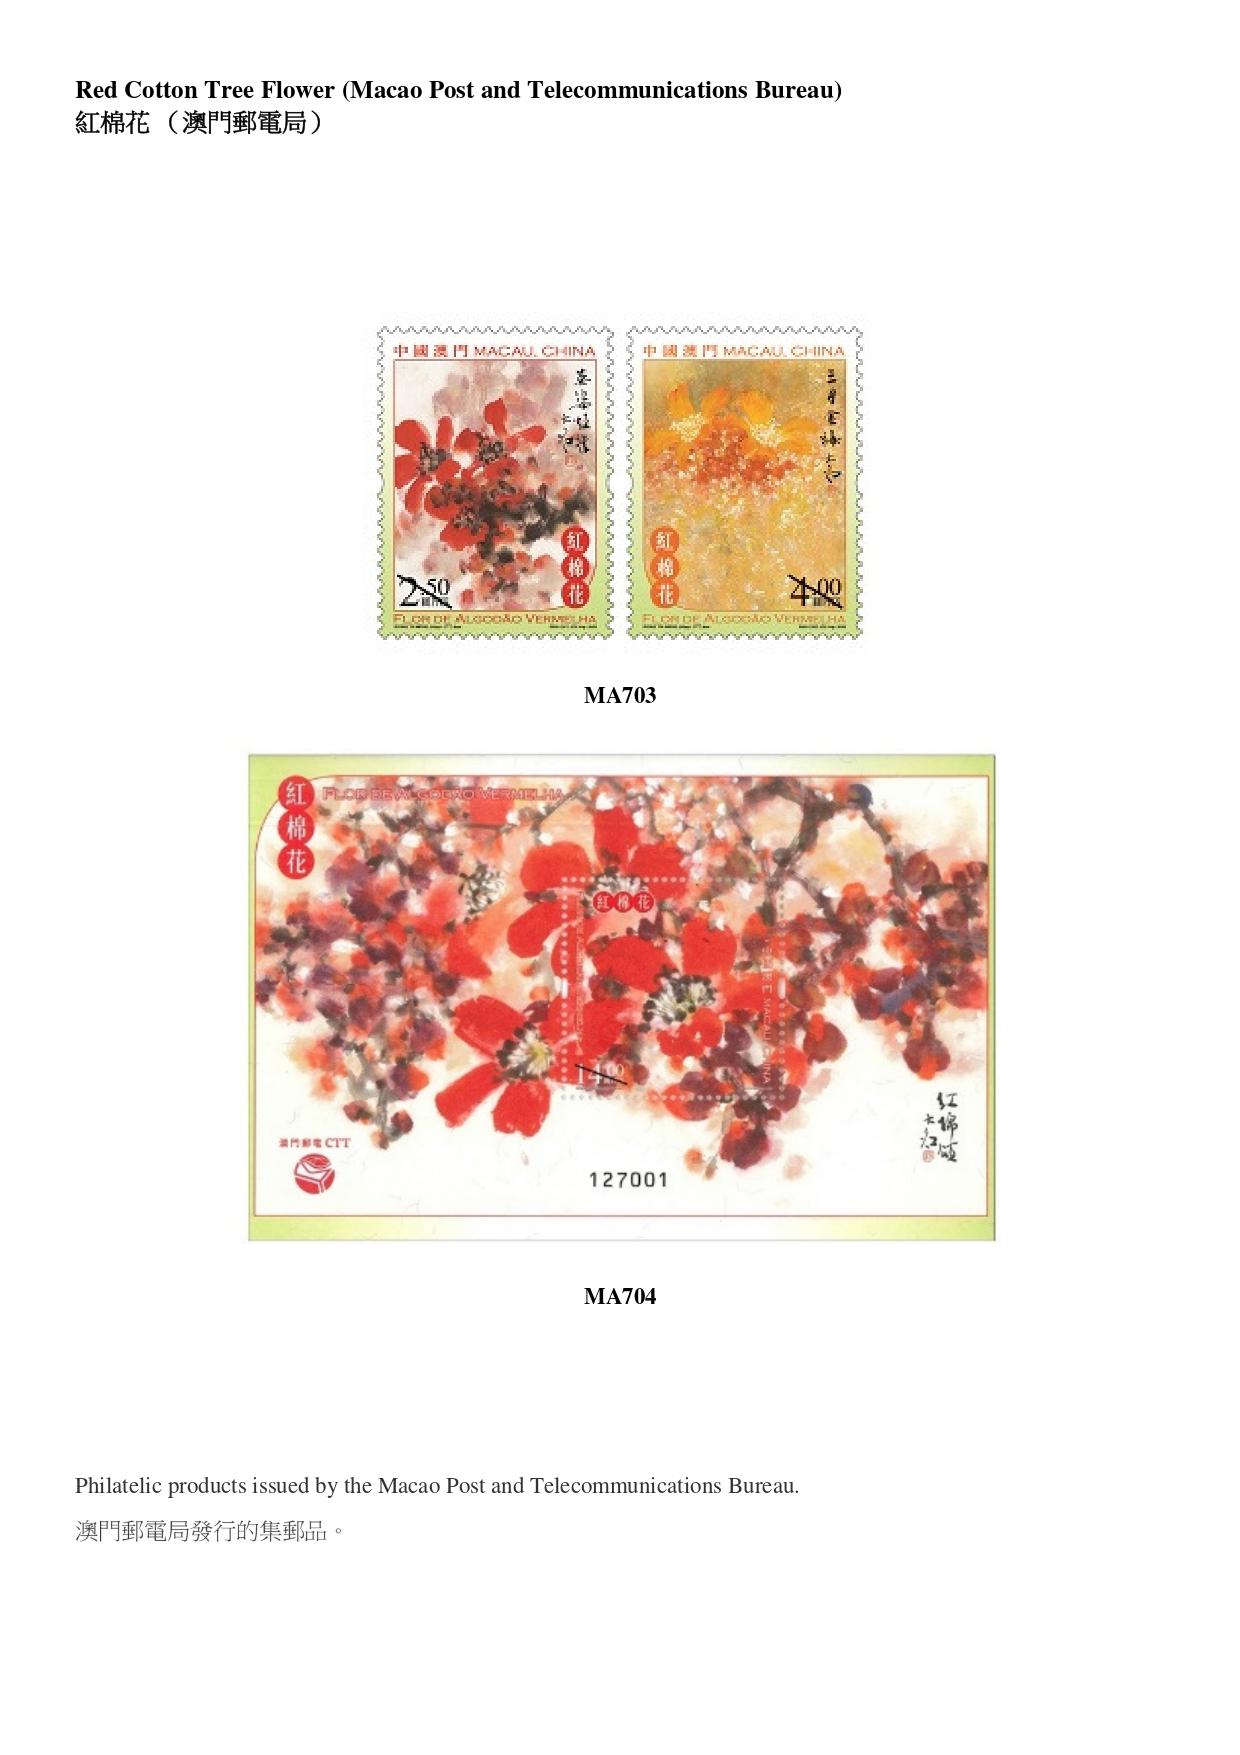 香港郵政今日（九月十三日）公布發售內地、澳門和海外的集郵品。圖示澳門郵電局發行的集郵品。
